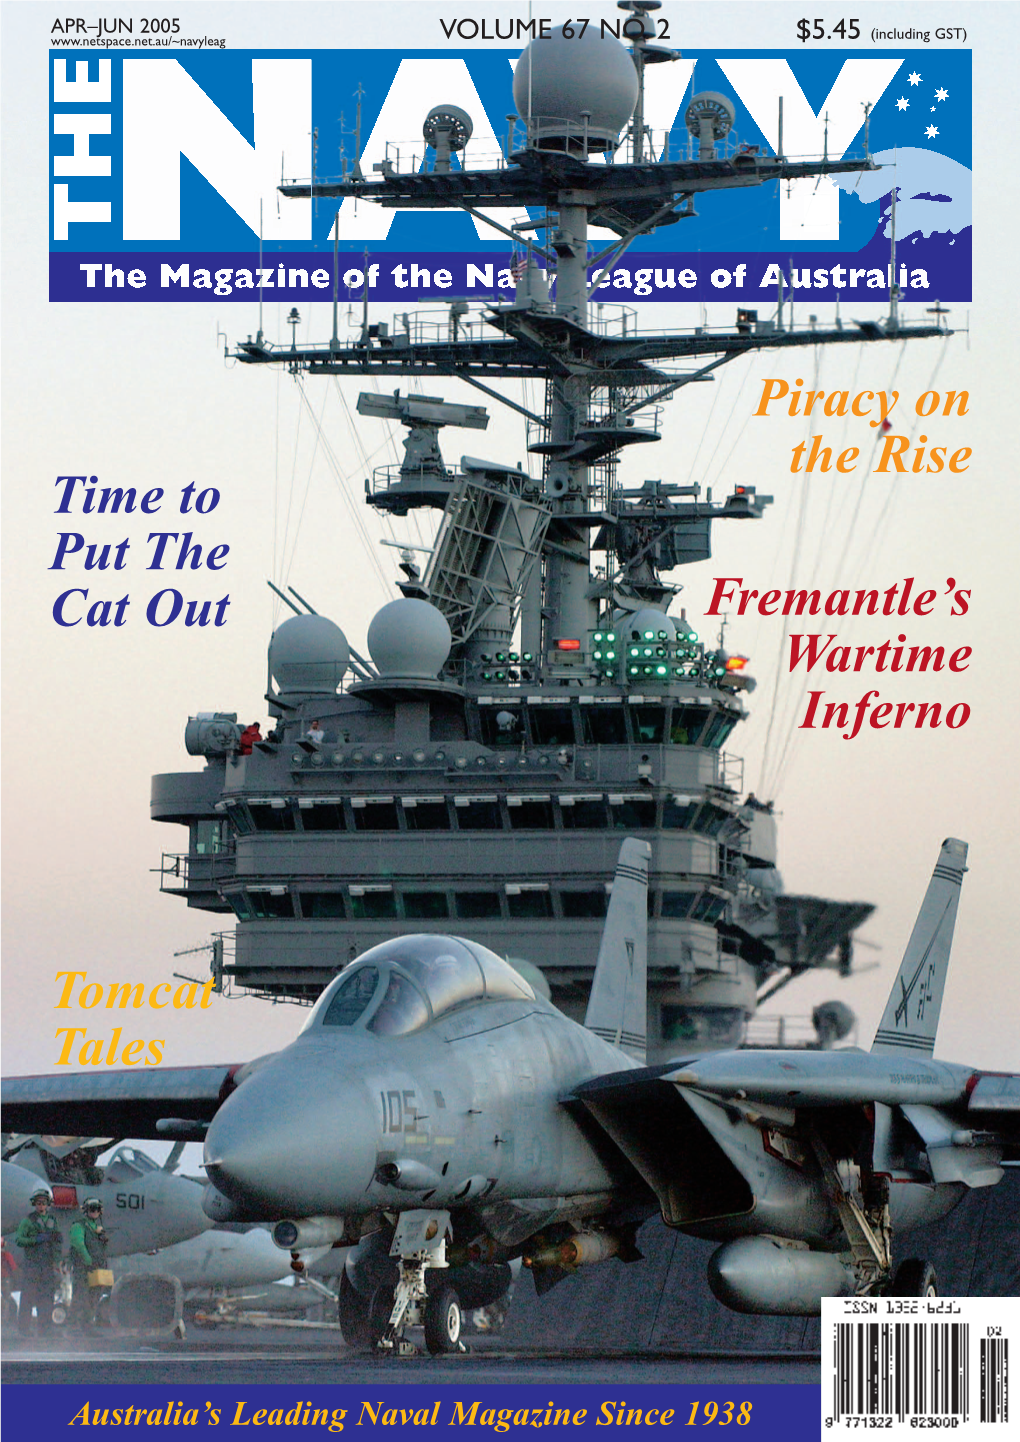 The Navy Vol 67 No 2 Apr 2005